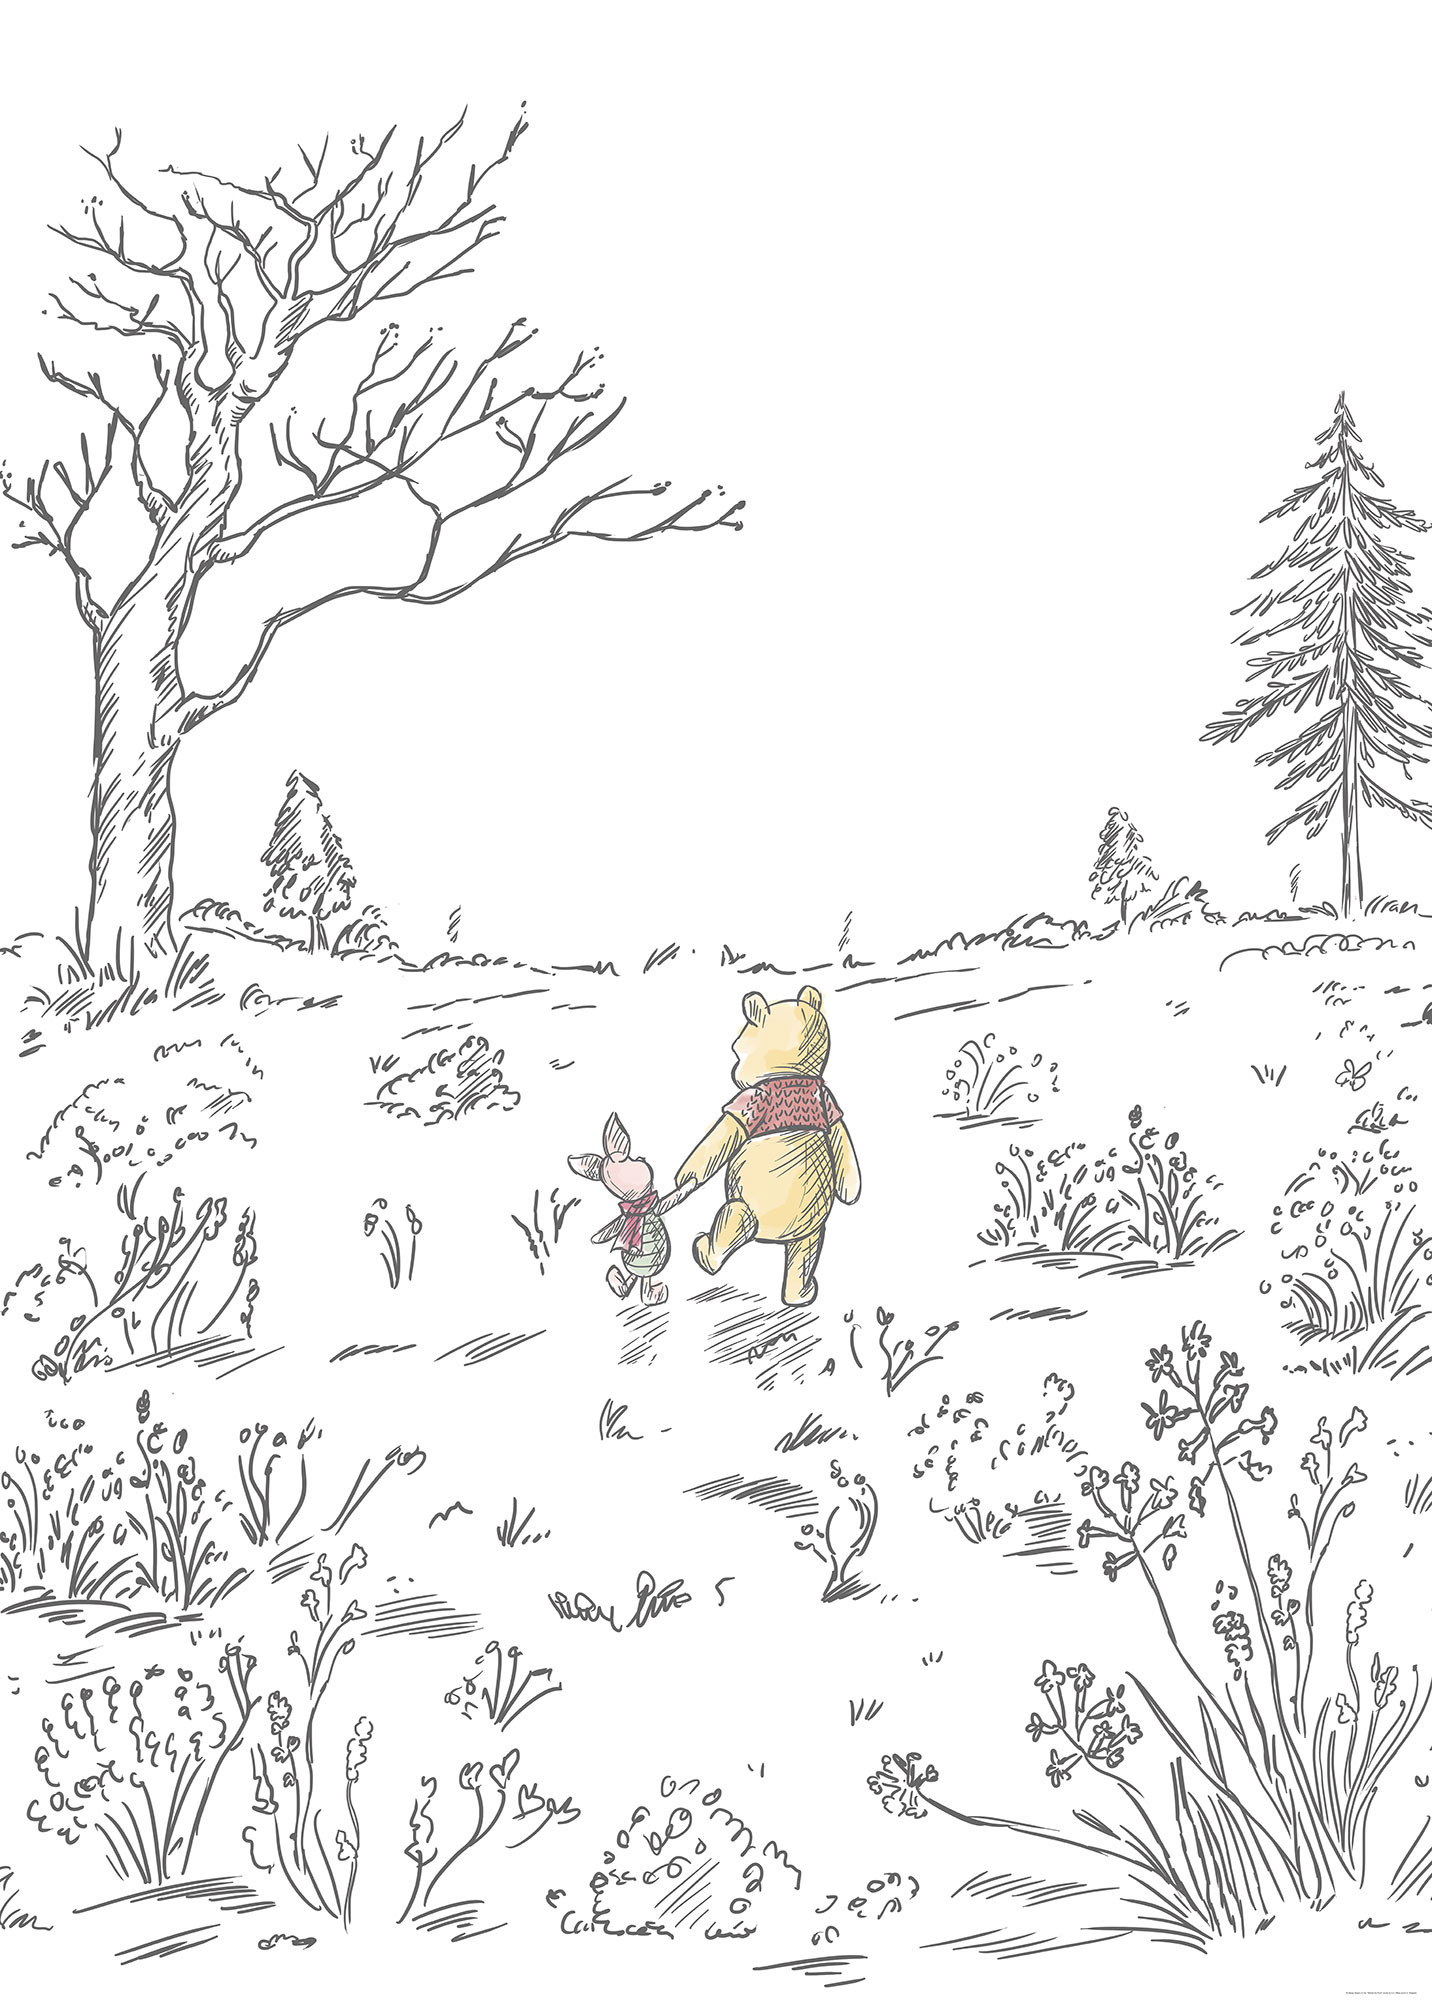 Winnie the Pooh Walk